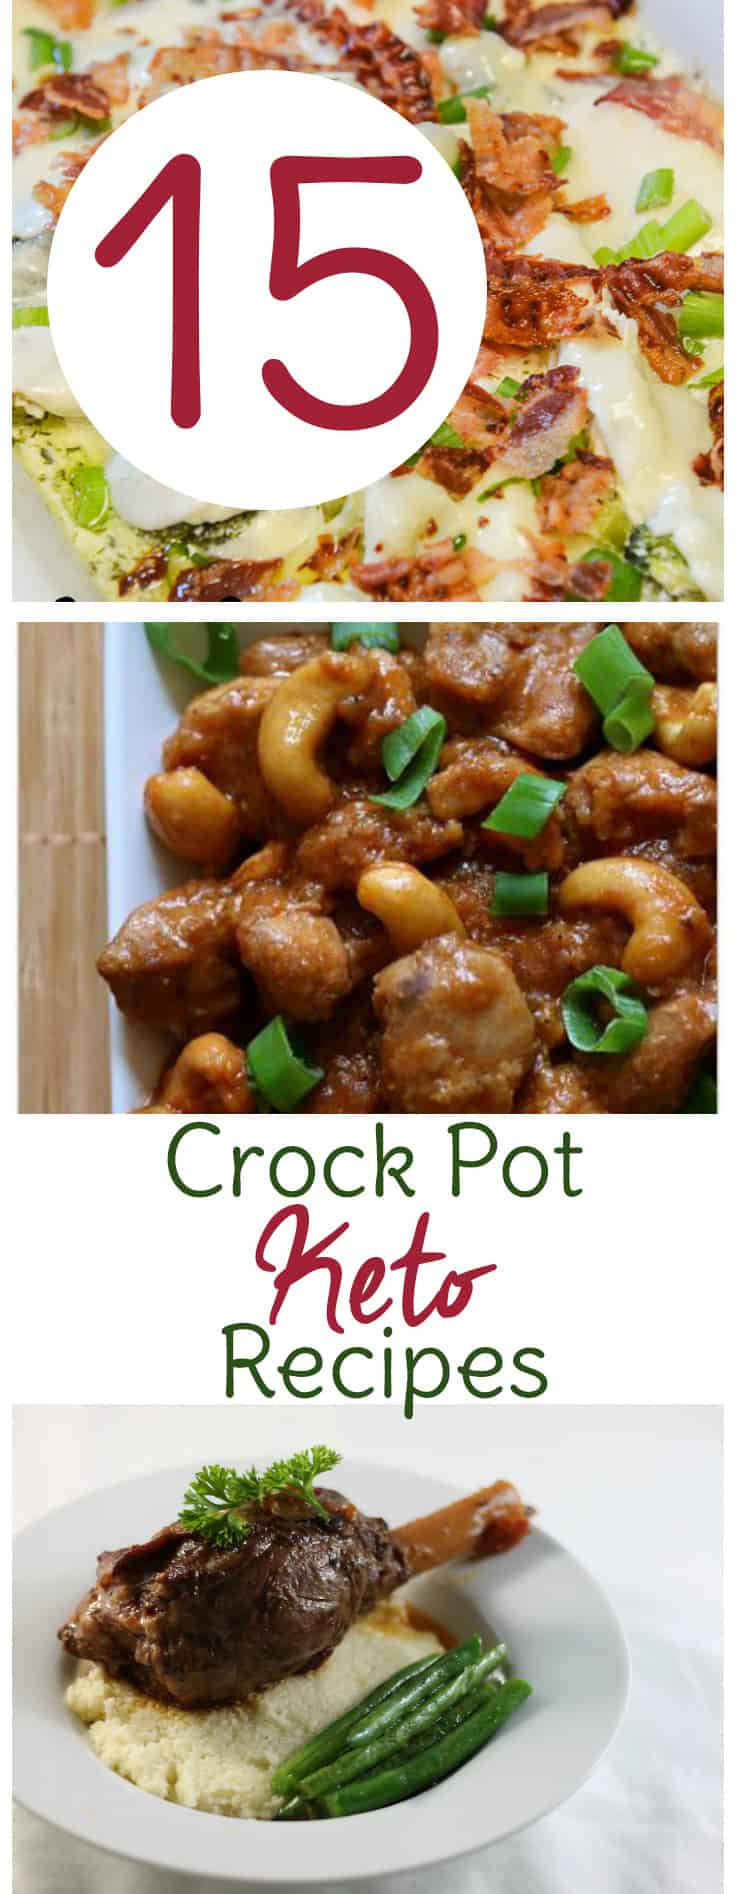 Crockpot Keto Recipes
 15 Keto Crock Pot Recipes